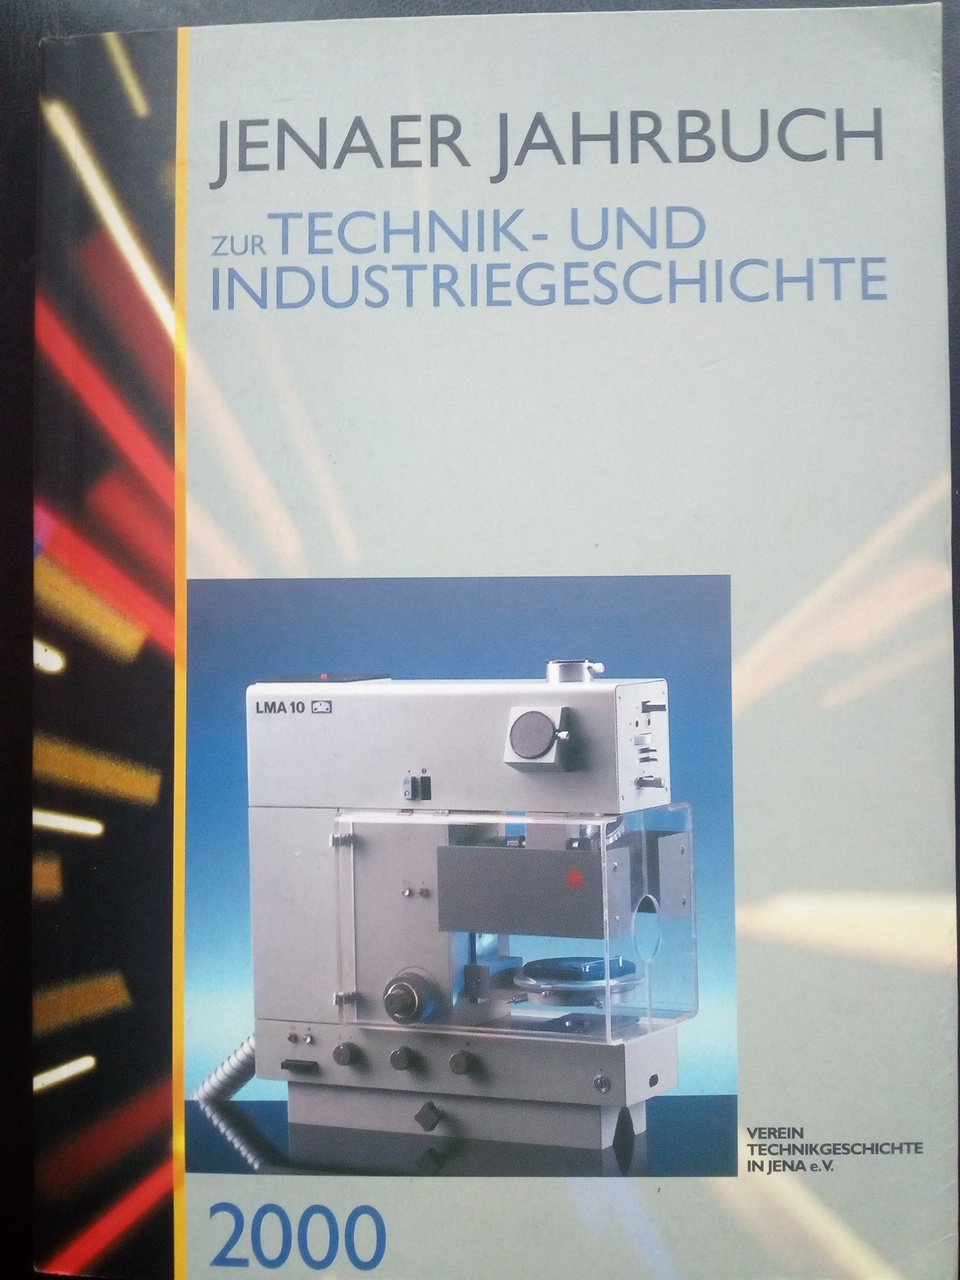 Jenaer Jahrbuch zur Technik- und Industriegeschichte 2000